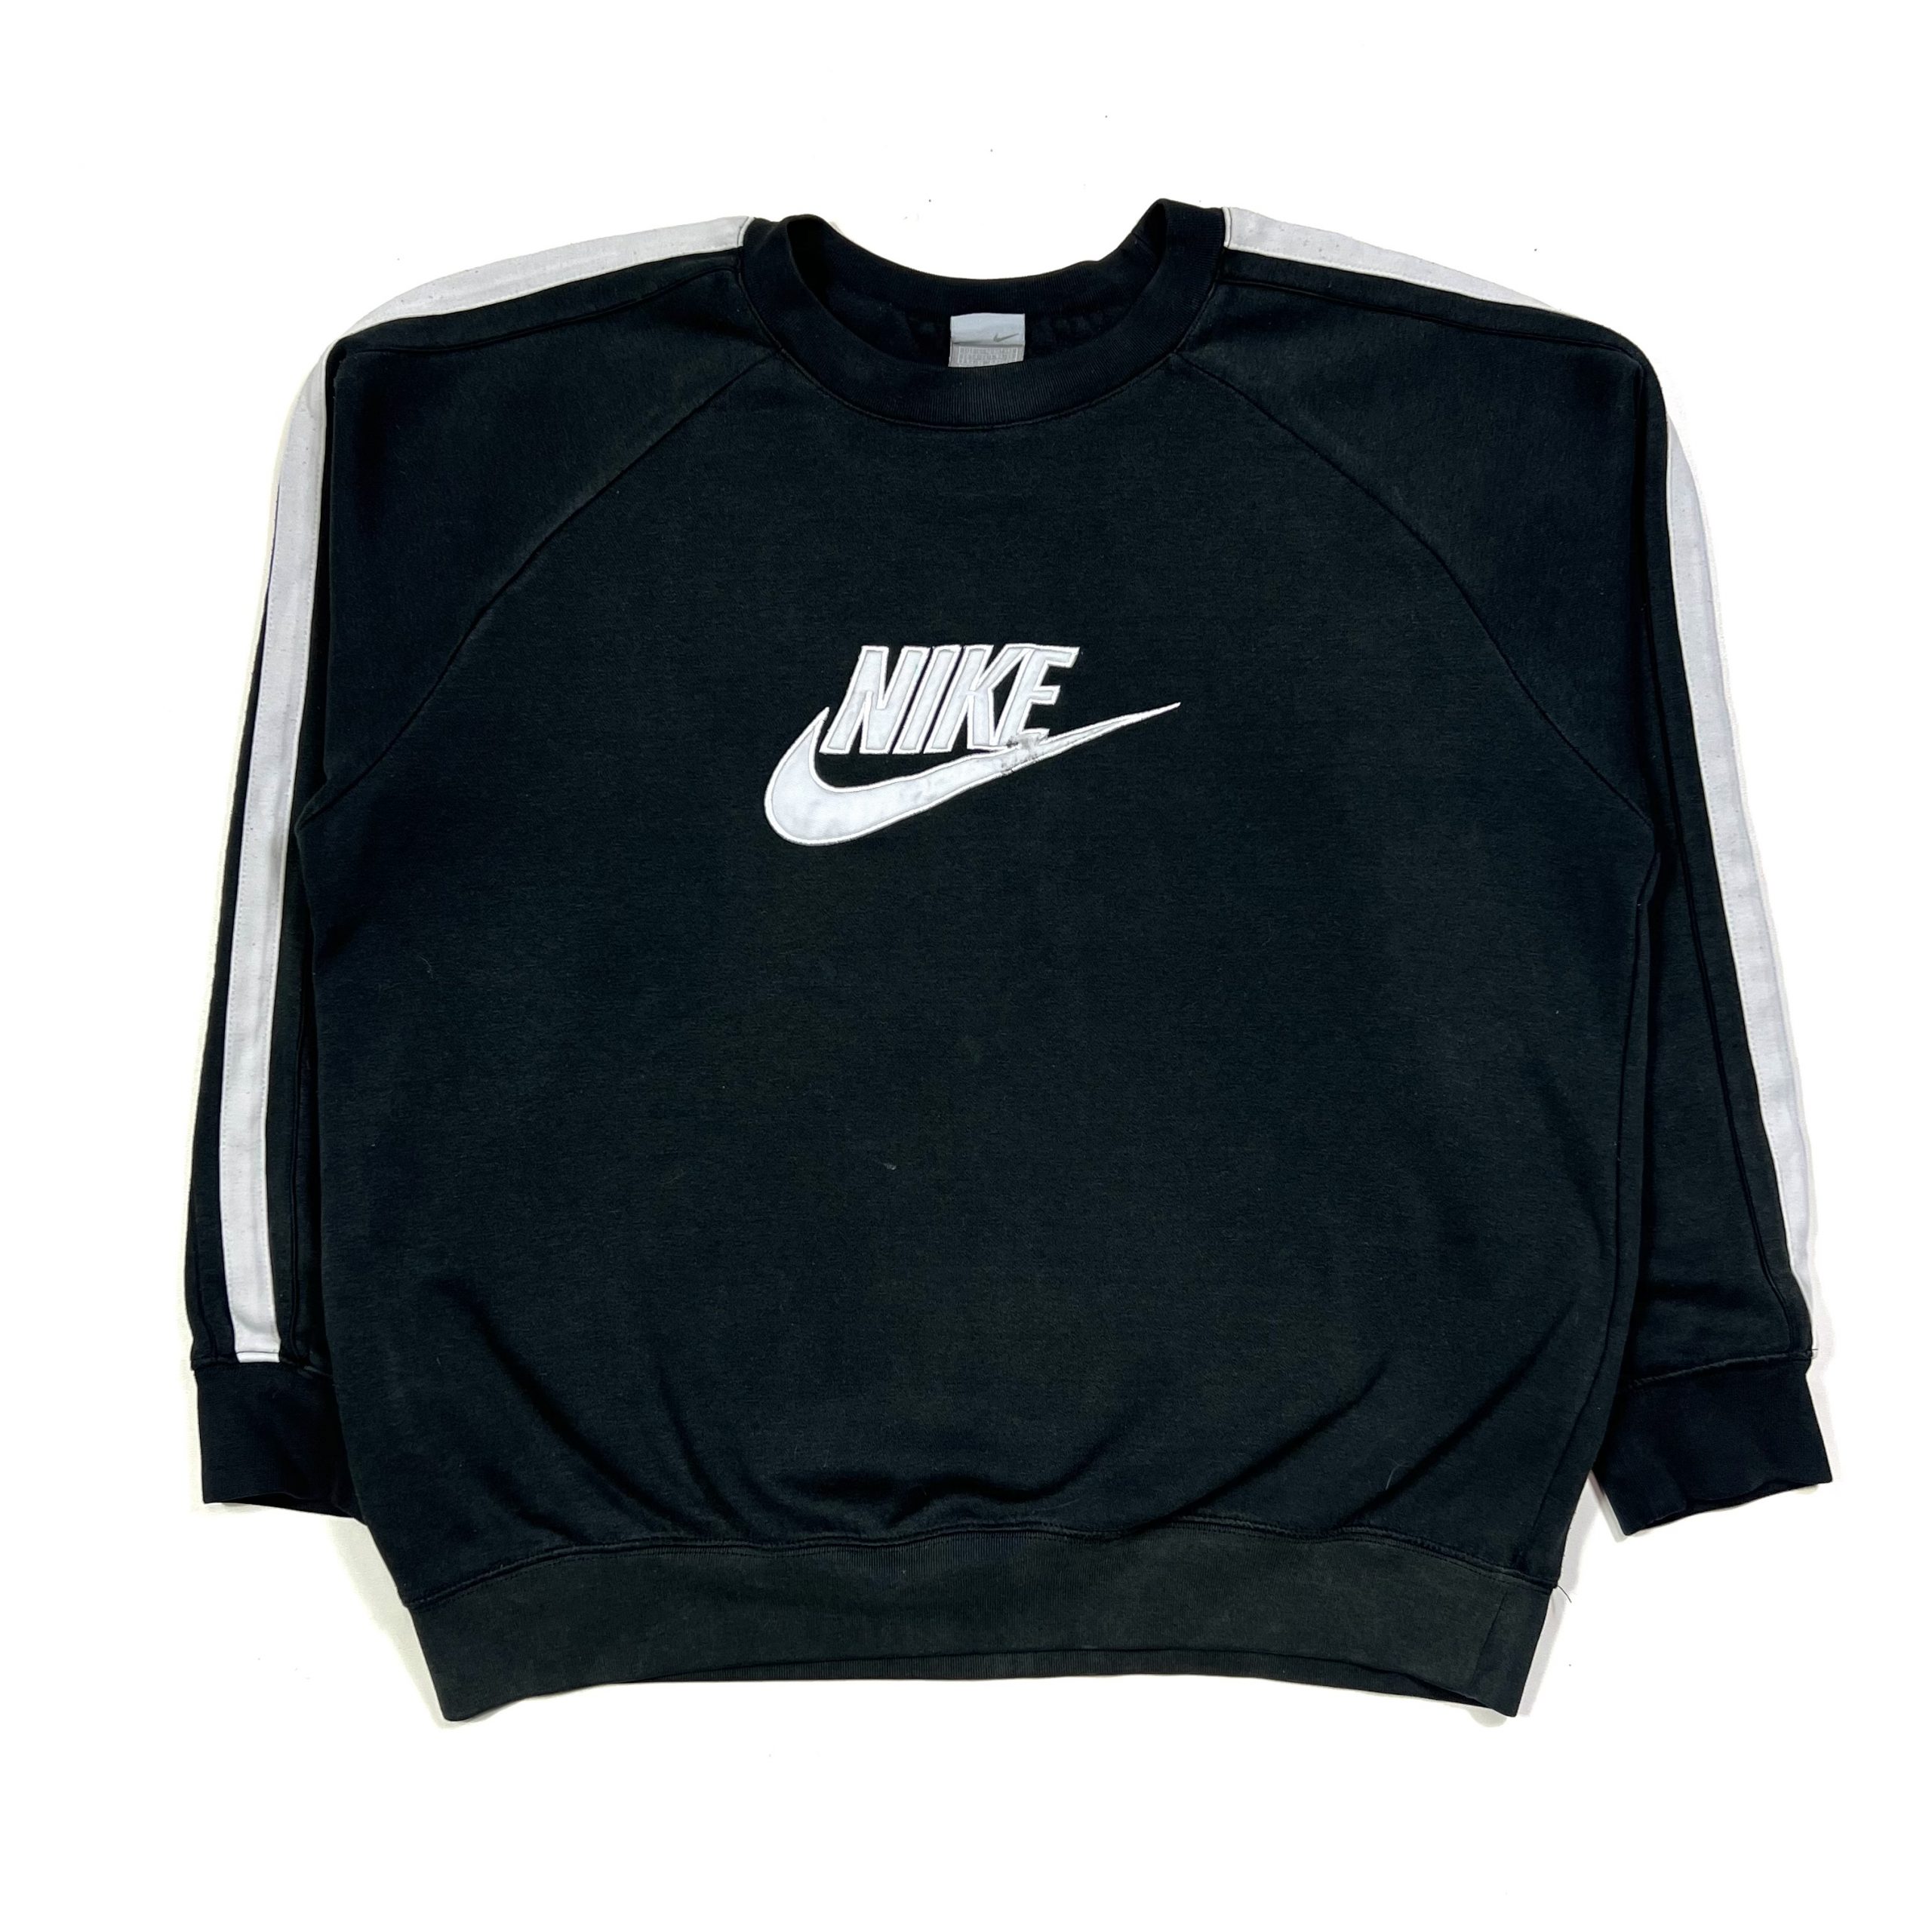 Nike Embroidered Sweatshirt - Black - TMC Vintage - Vintage Clothing